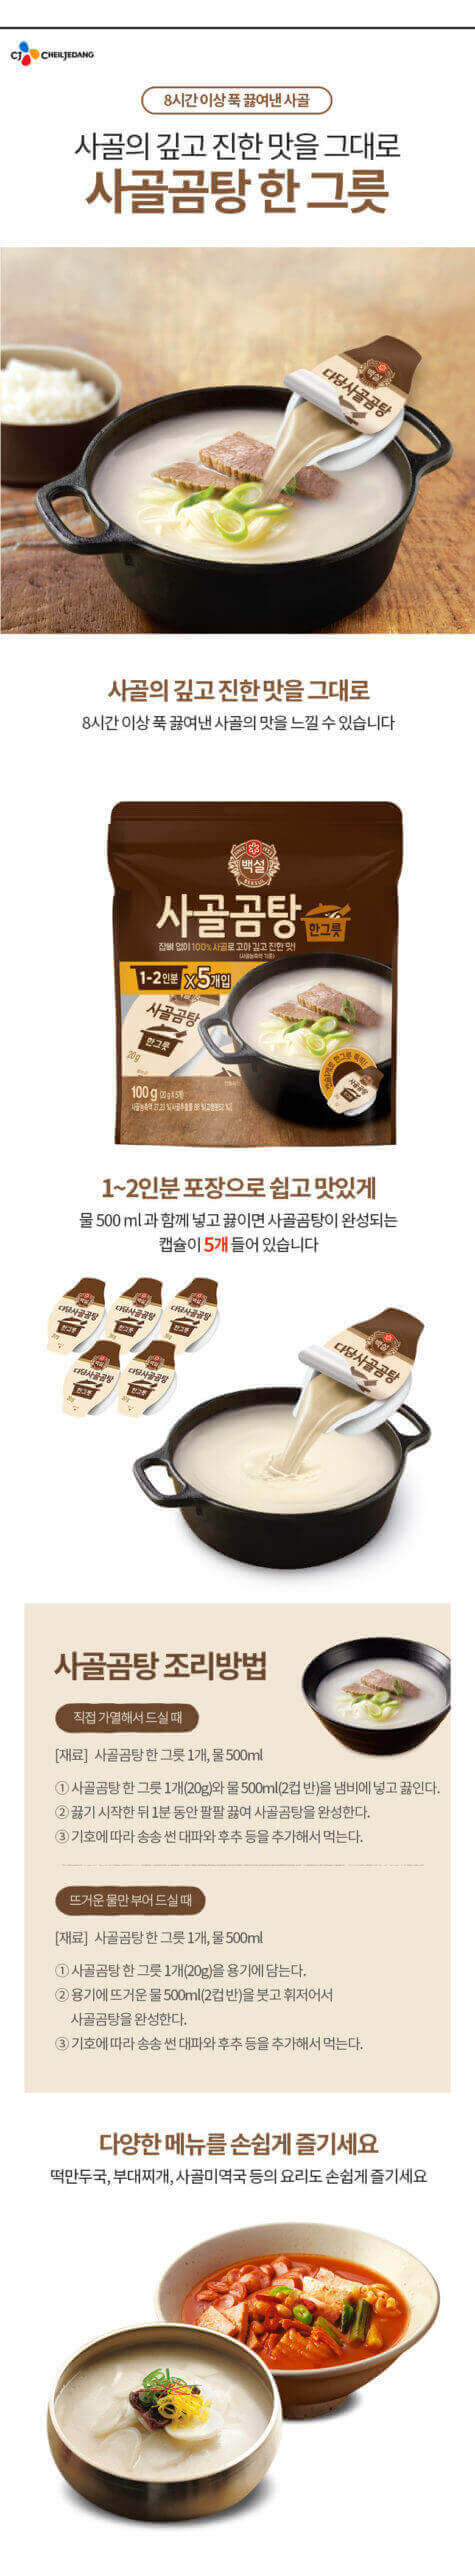 韓國食品-[CJ] 백설 사골곰탕한그릇 100g